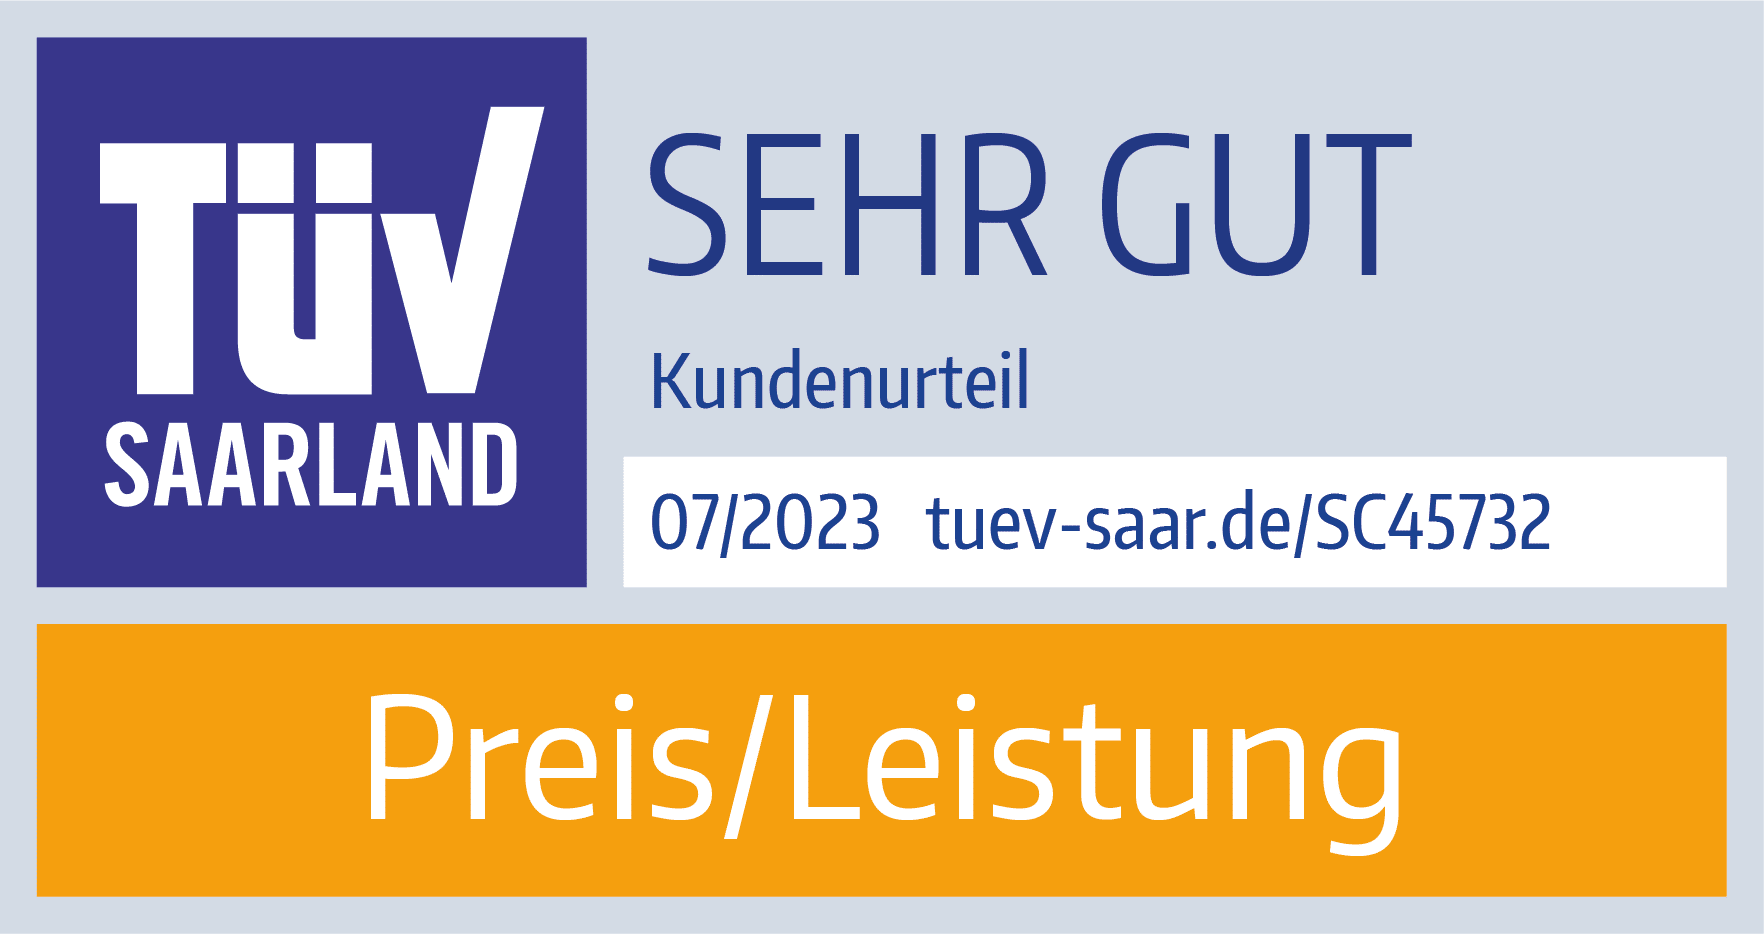 TÜV Siegel, Sehr gut, Preis/Leistung, Juli 2021